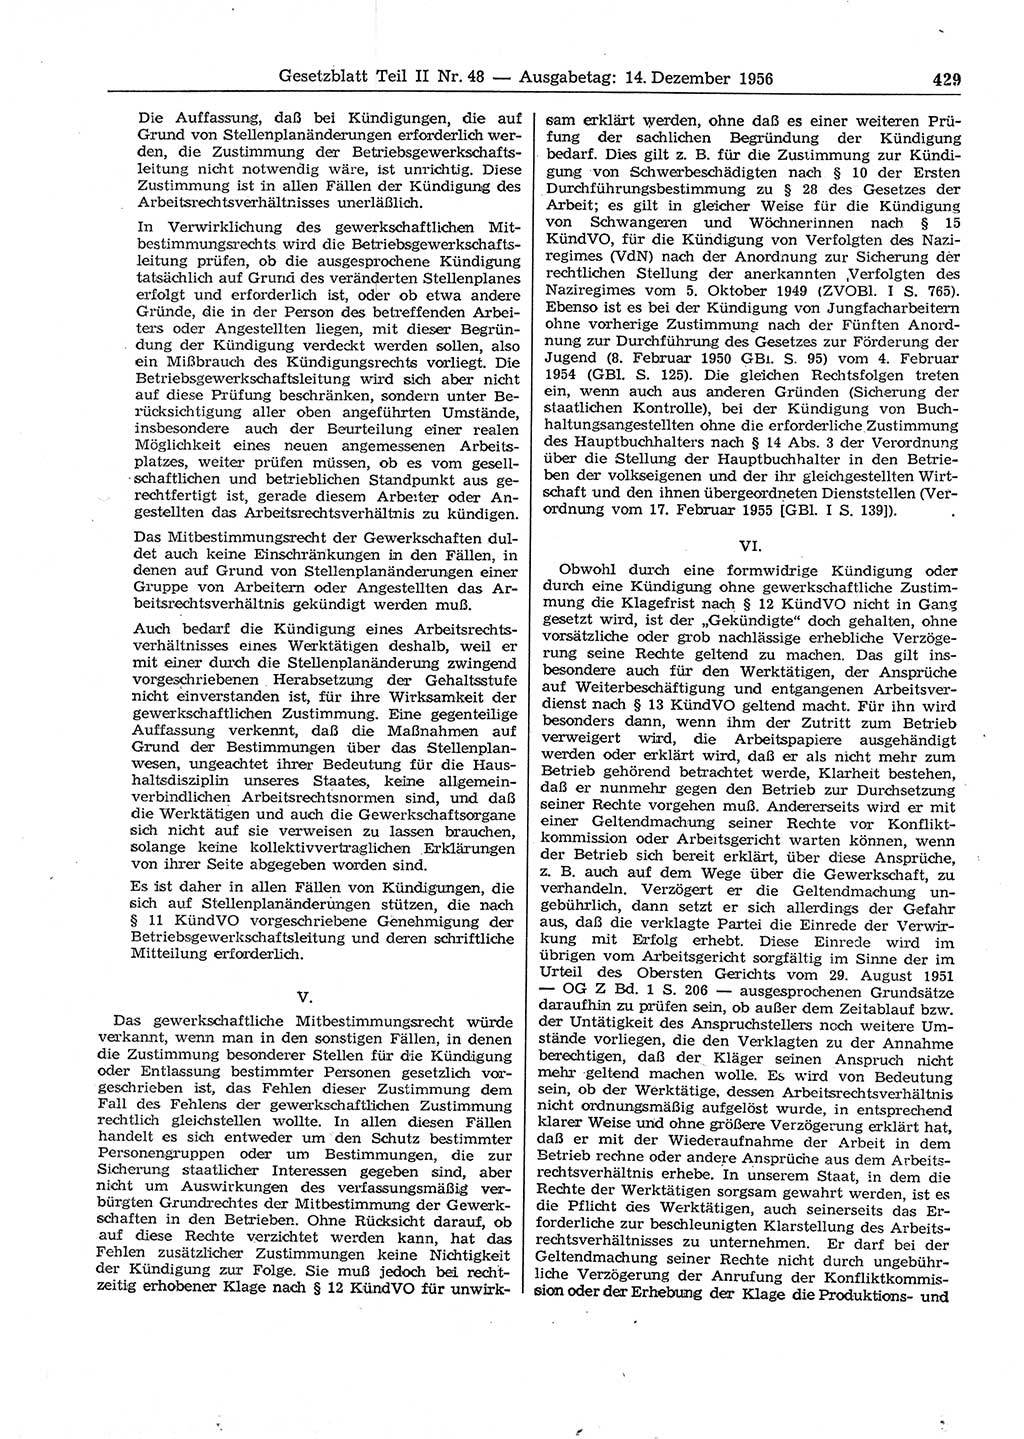 Gesetzblatt (GBl.) der Deutschen Demokratischen Republik (DDR) Teil ⅠⅠ 1956, Seite 429 (GBl. DDR ⅠⅠ 1956, S. 429)